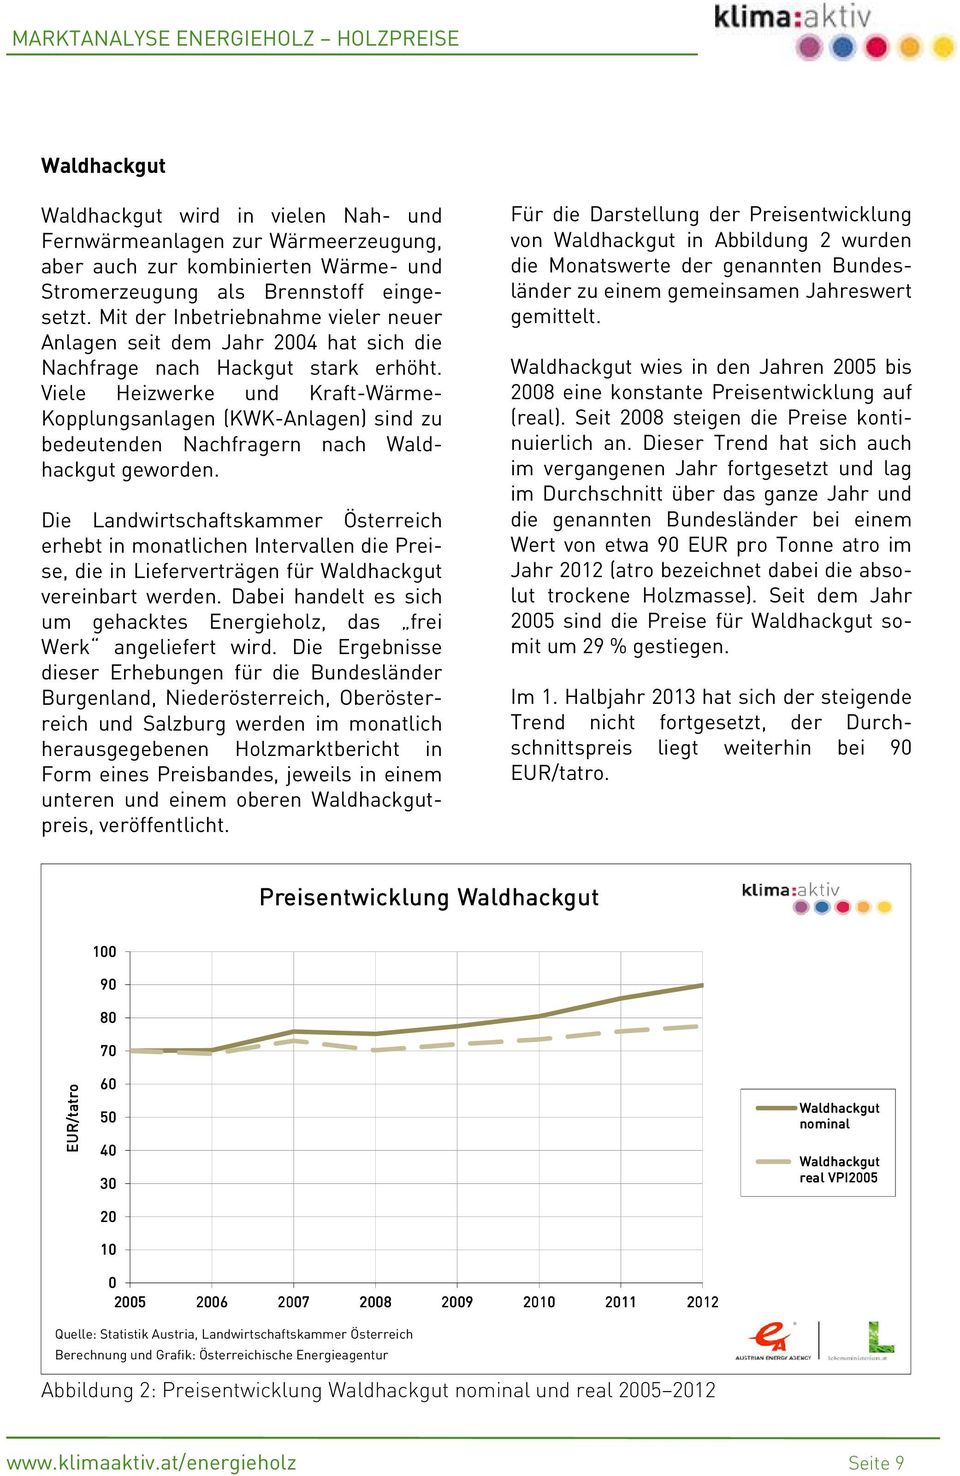 Viele Heizwerke und Kraft-Wärme- Kopplungsanlagen (KWK-Anlagen) sind zu bedeutenden Nachfragern nach Waldhackgut geworden.